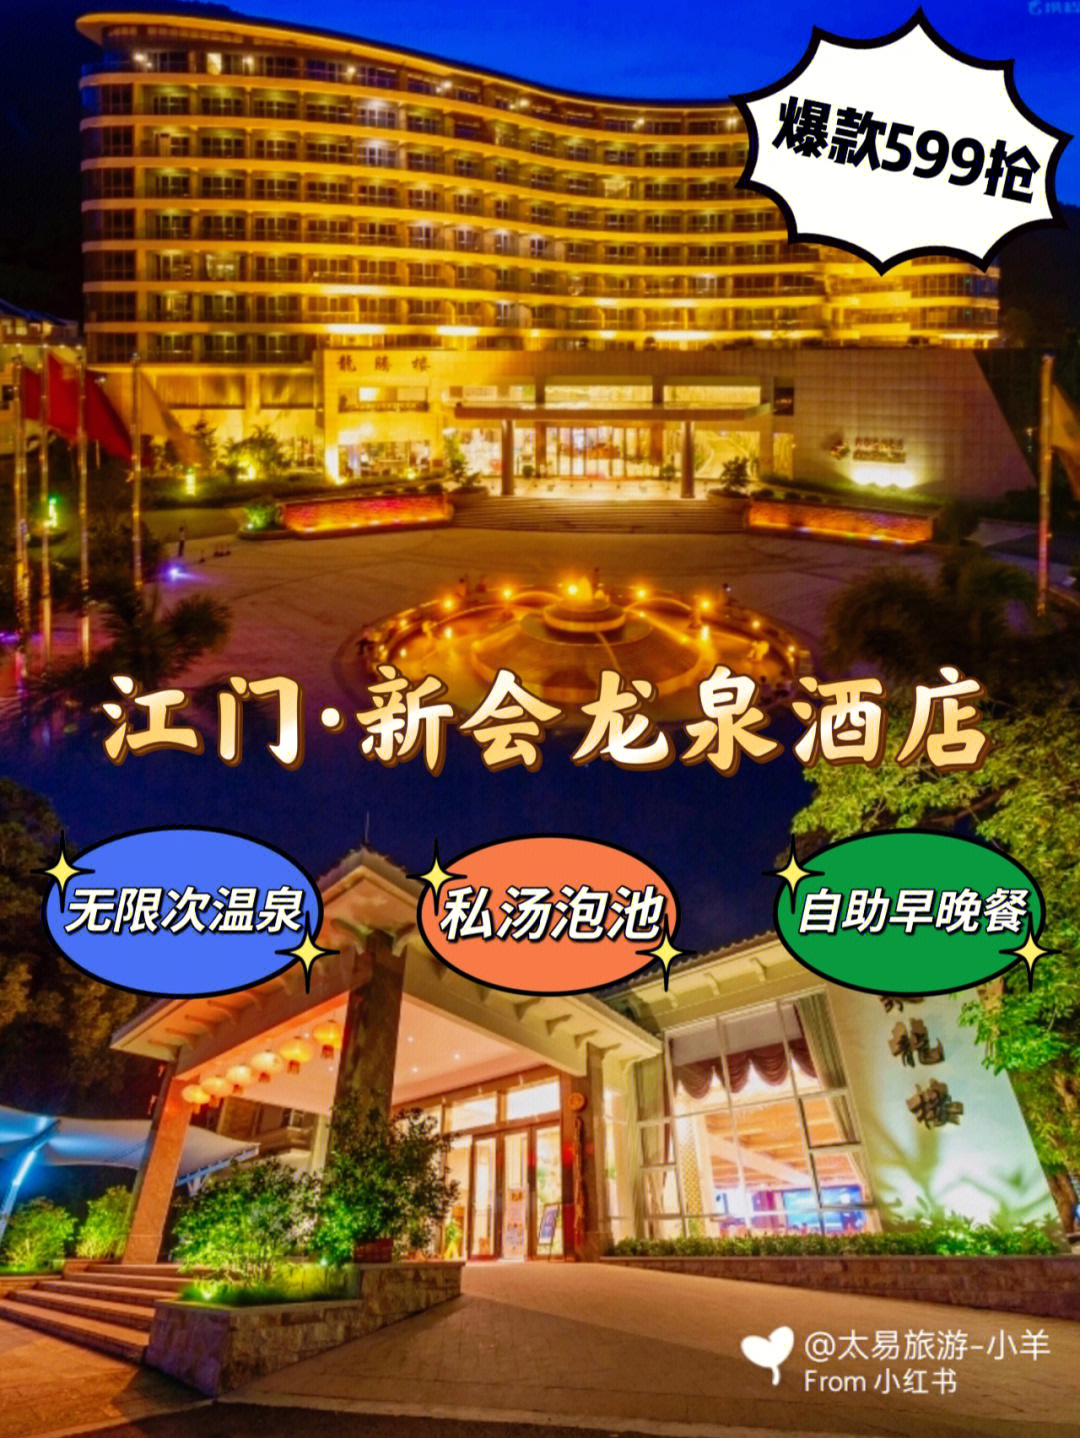 599元抢新会龙泉酒店龙翔谷温泉别墅房